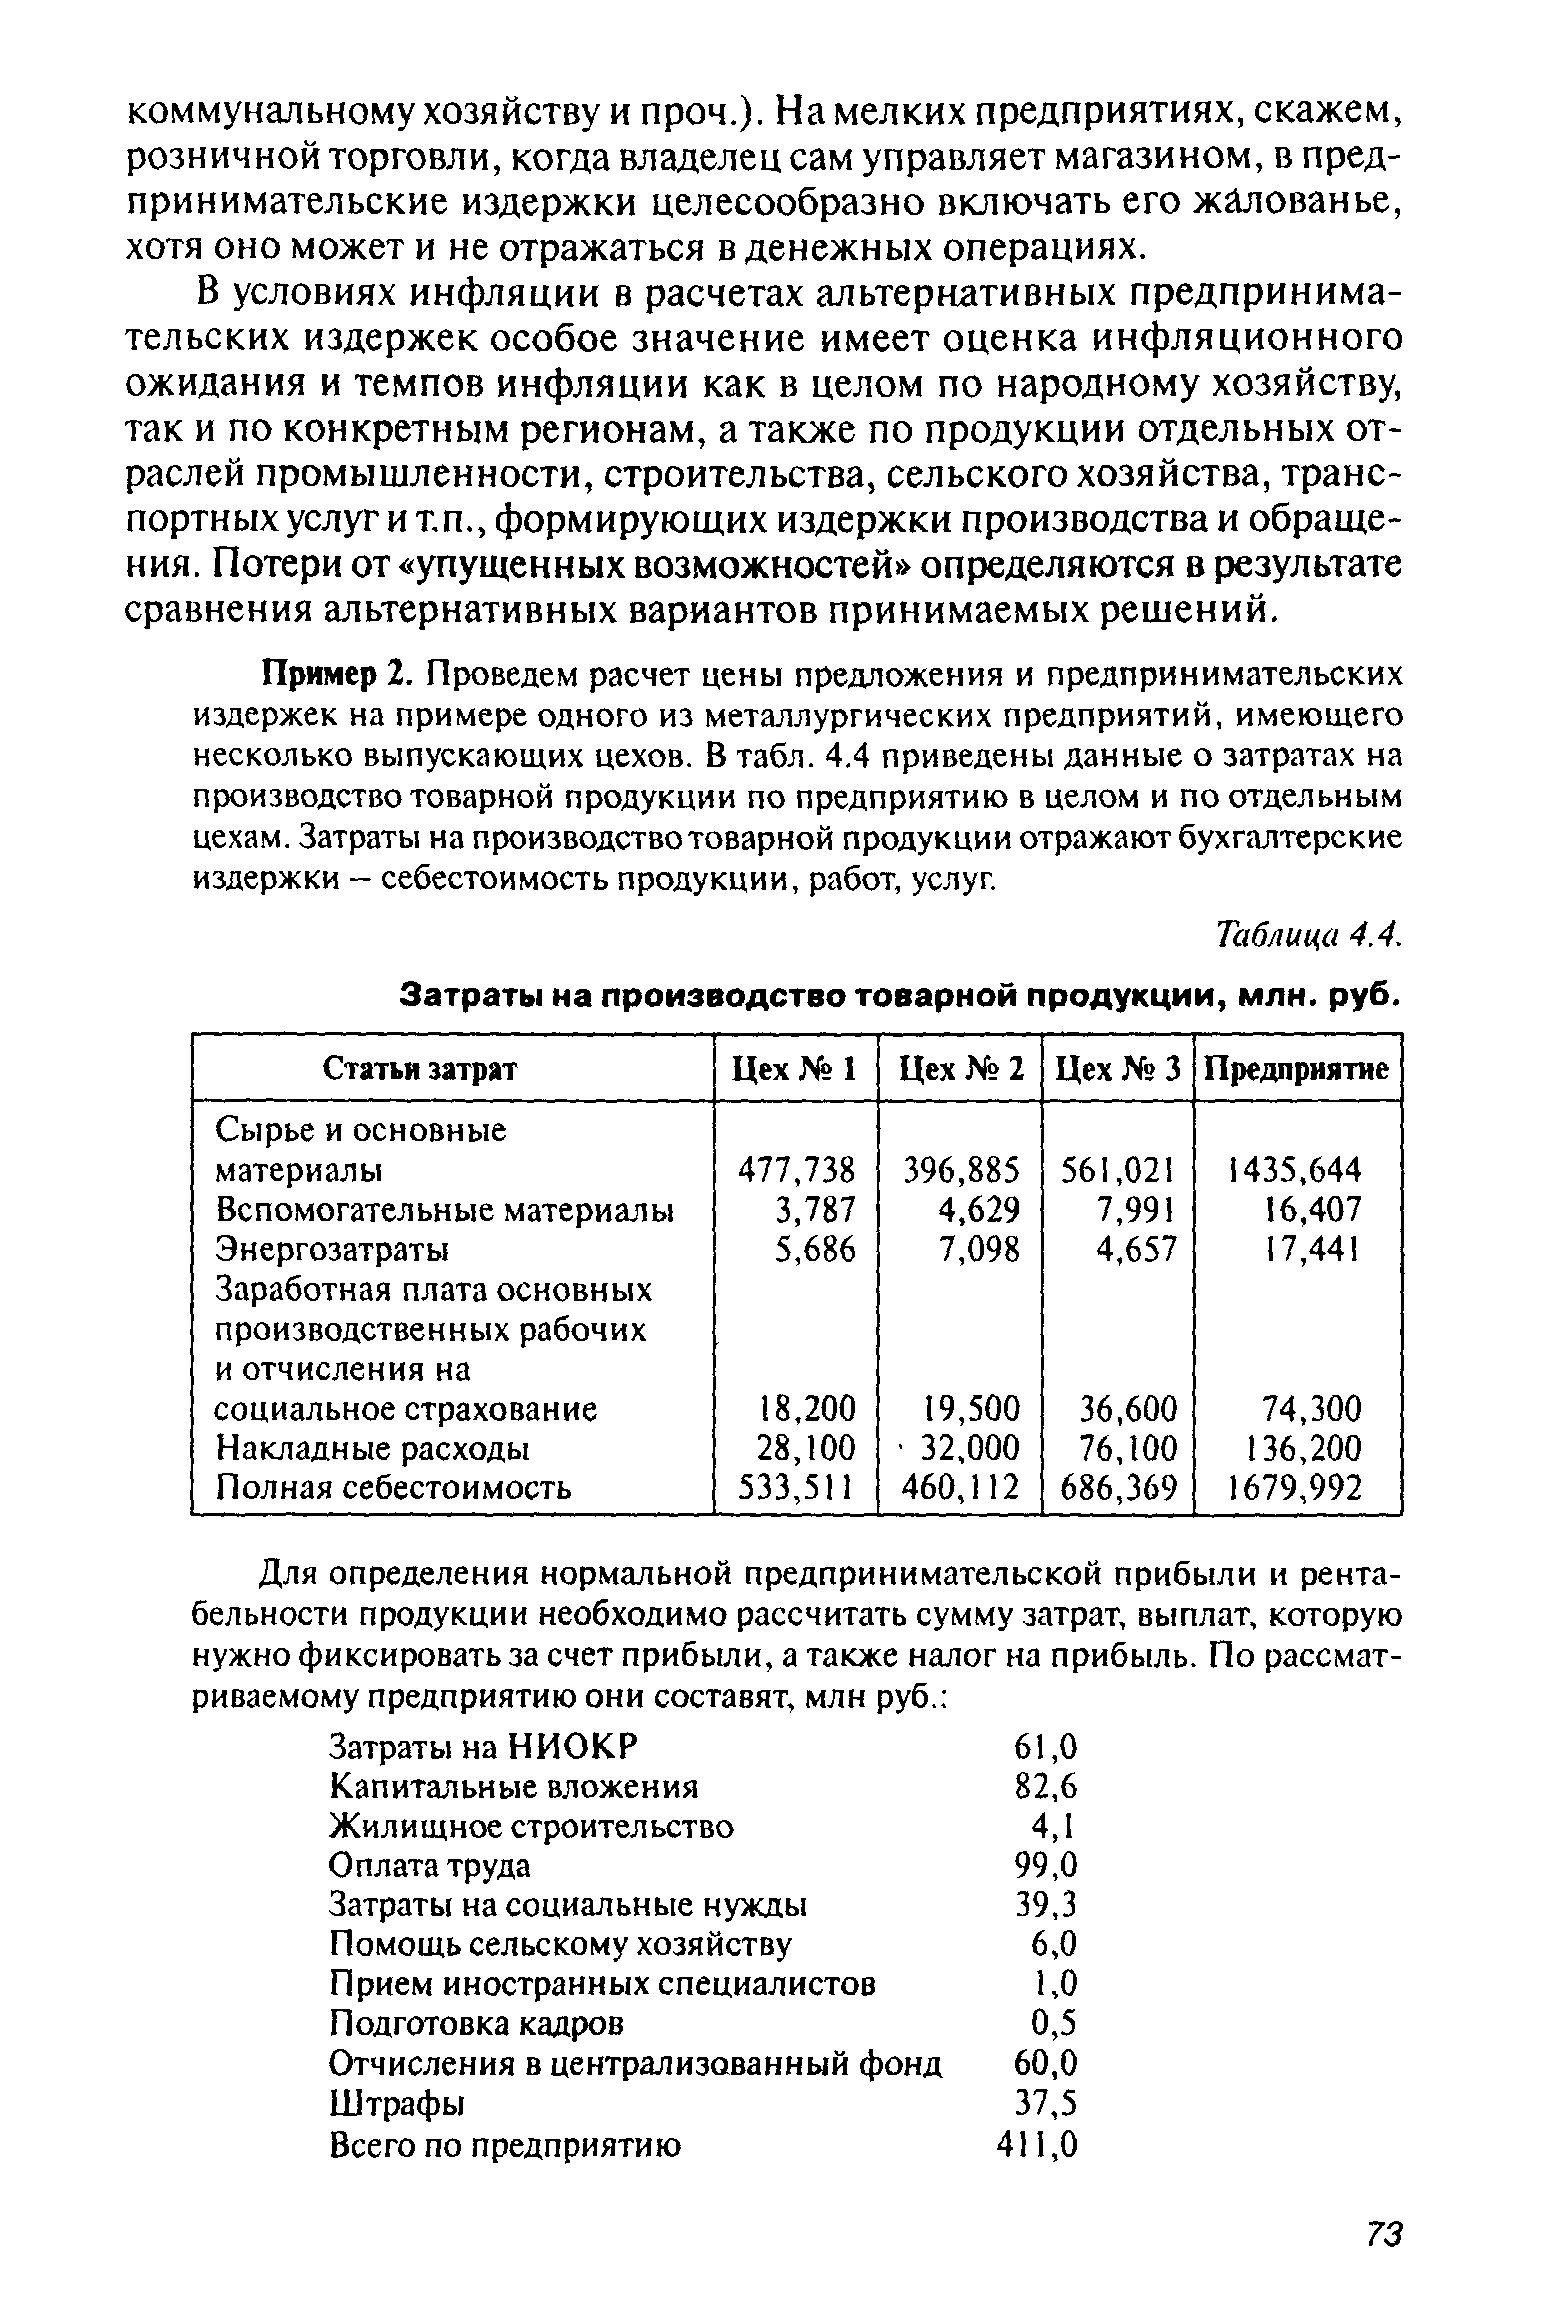 Таблица 4.4. Затраты на <a href="/info/41226">производство товарной</a> продукции, млн. руб.
